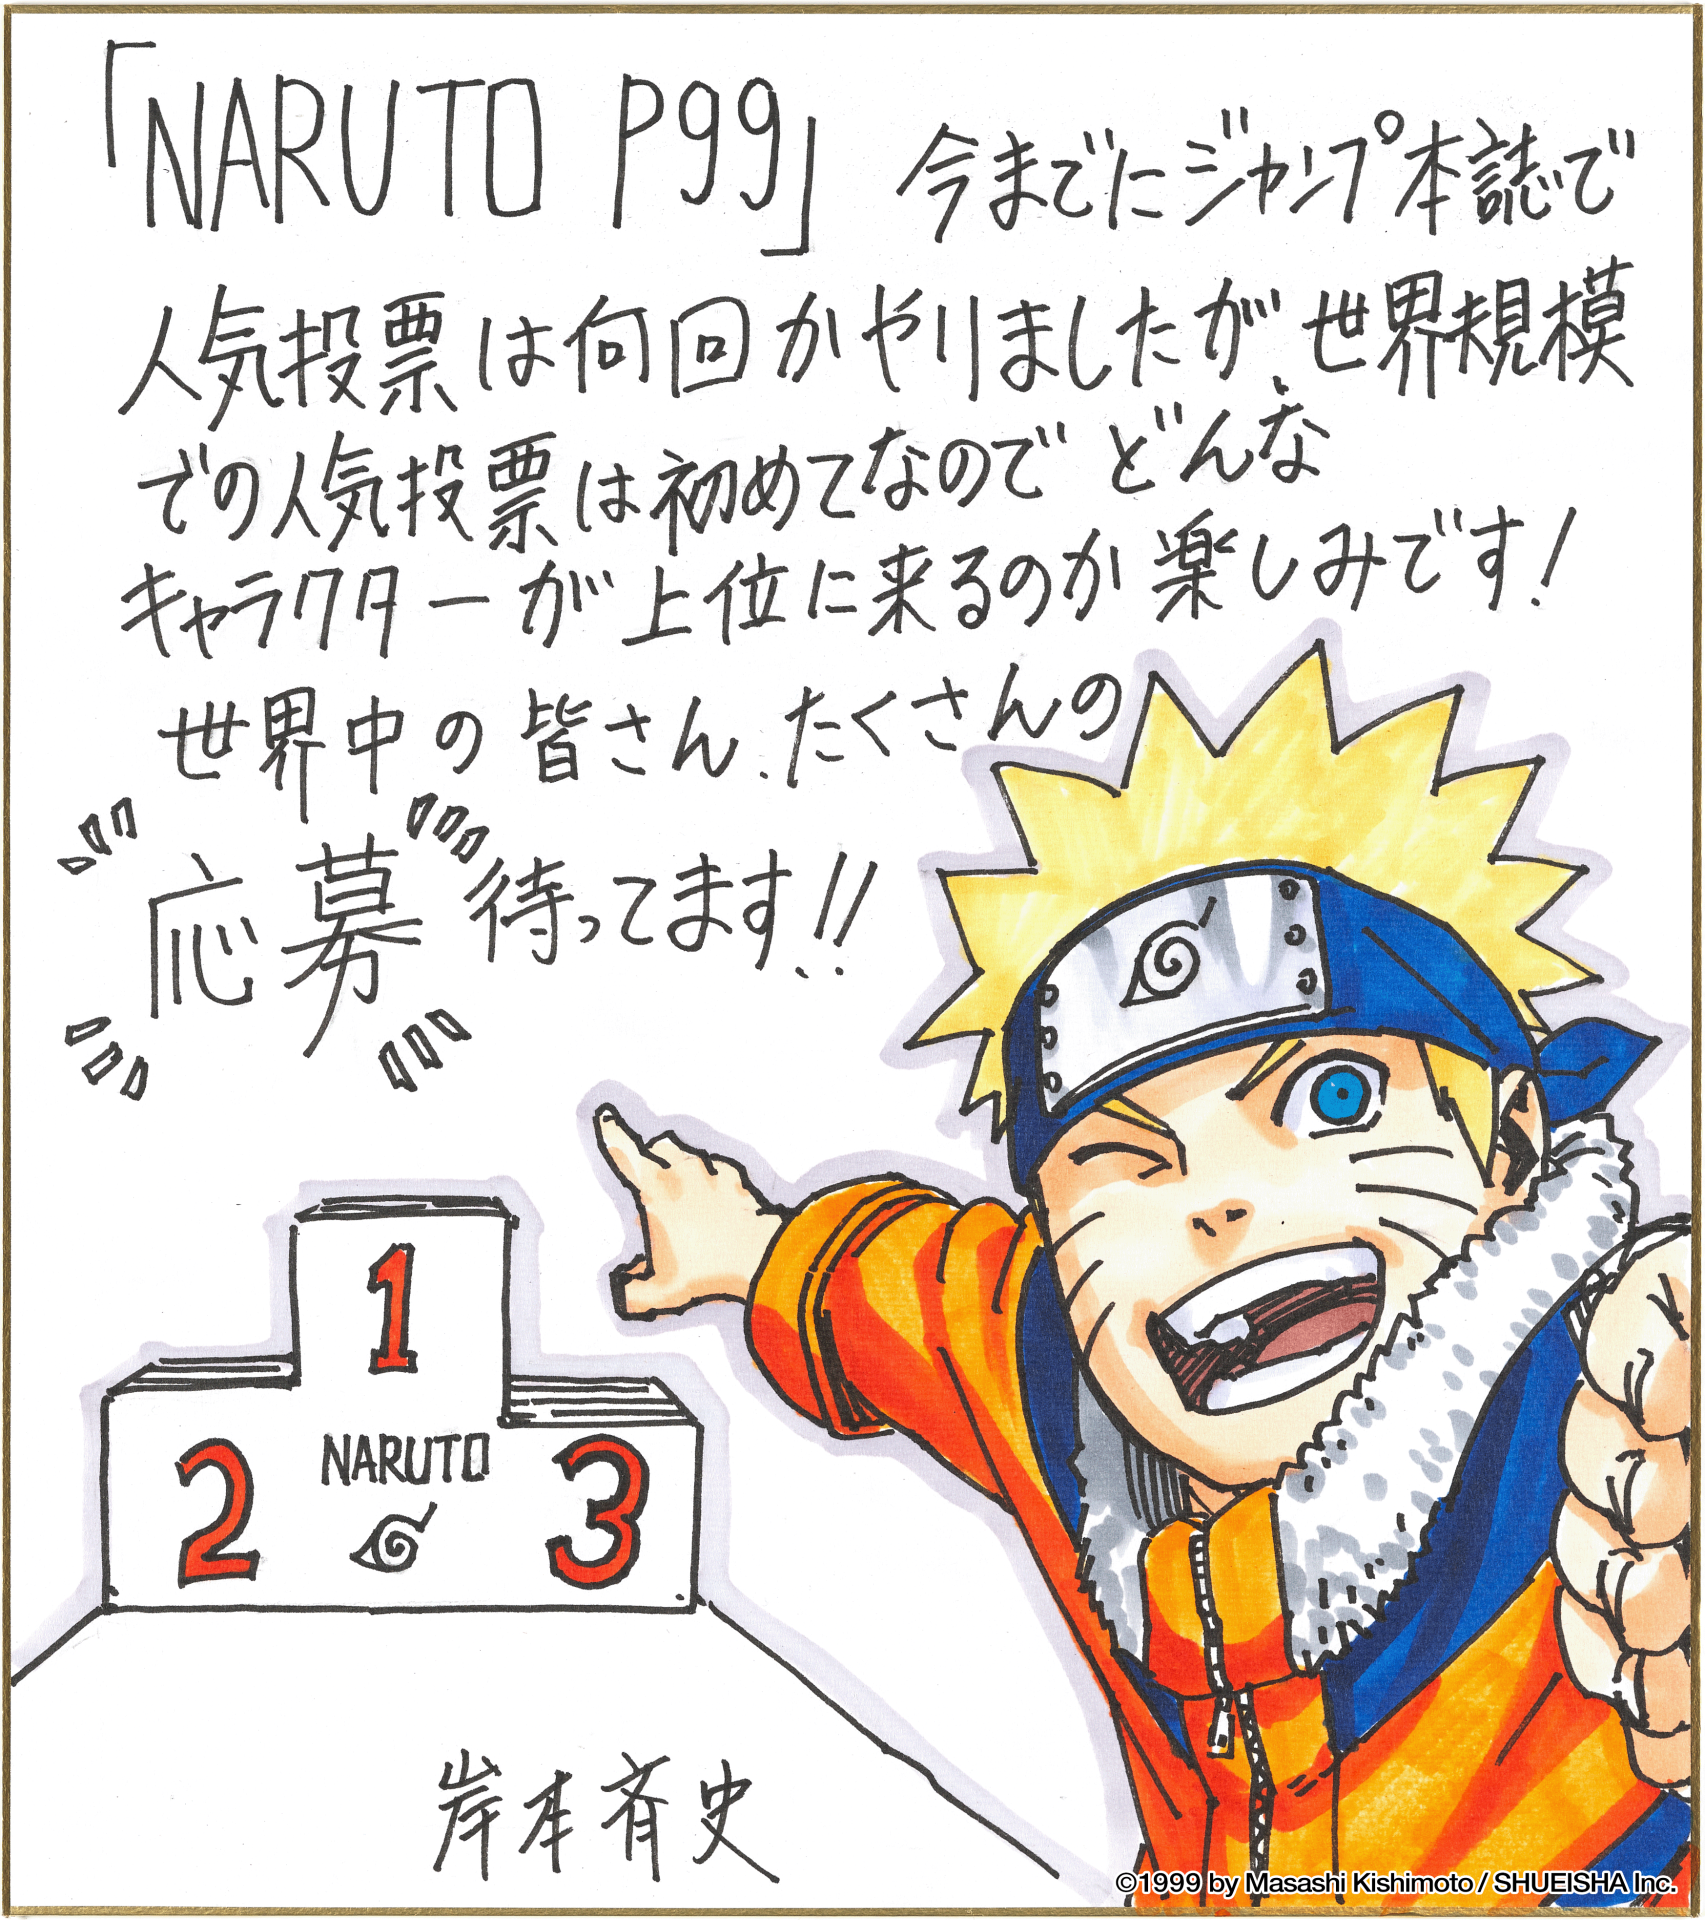 Naruto Top 99 é anunciado durante a Jump Festa 2022 2023 Viciados